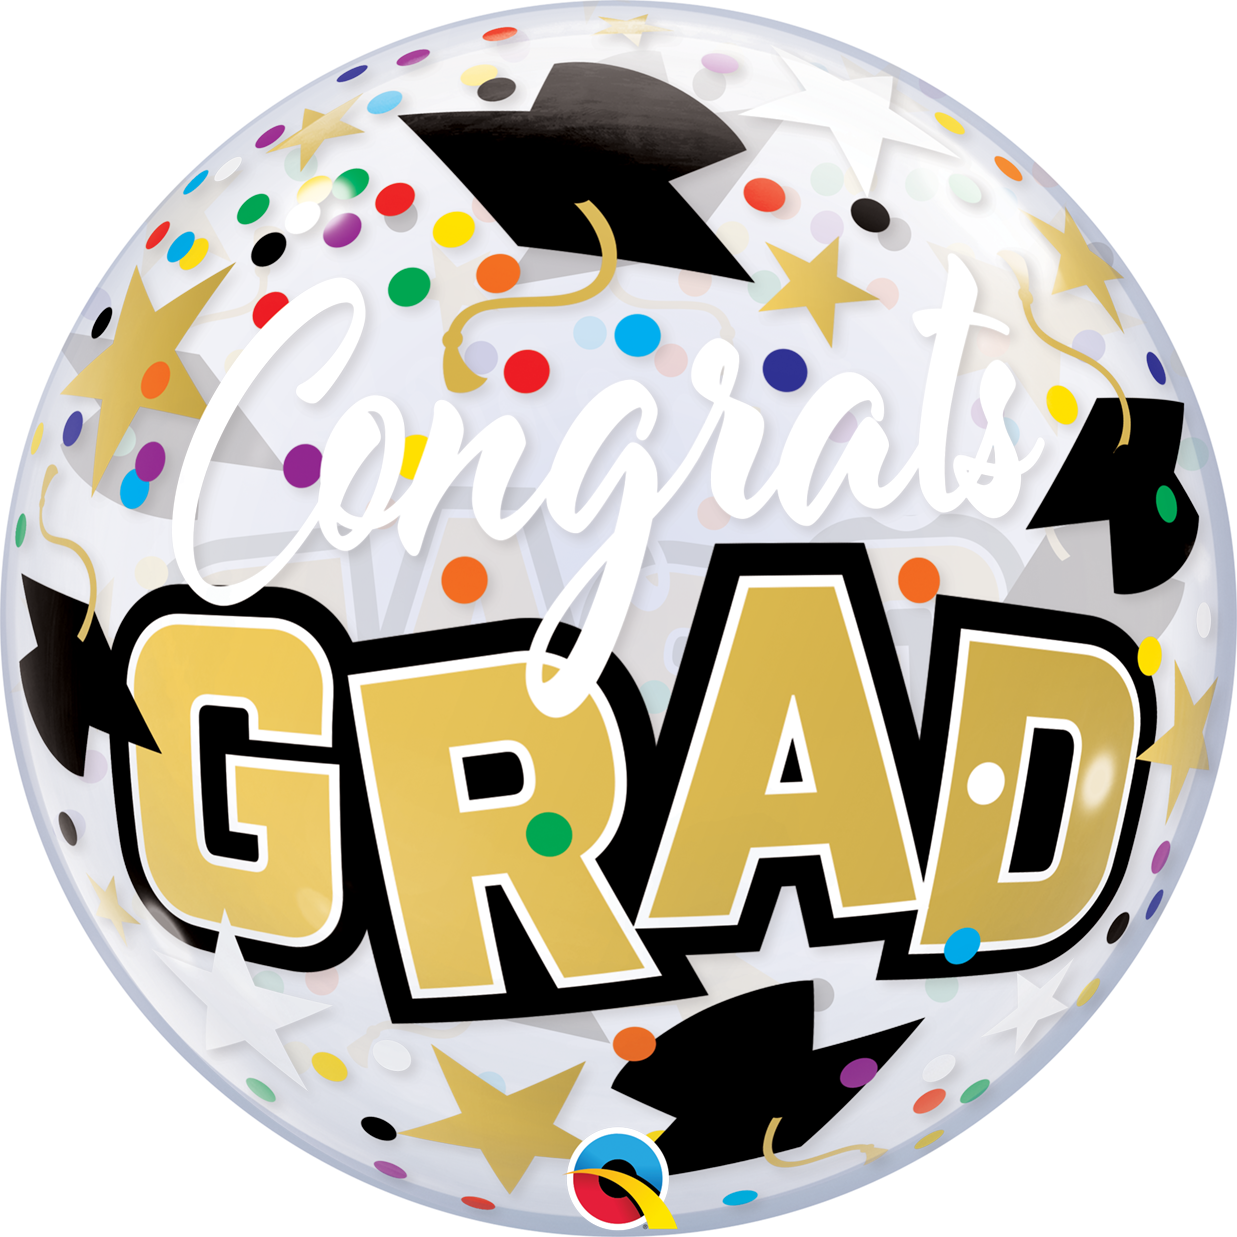 22" Congrats Grad Stars and Dots Qualatex Bubble Balloon (P31)